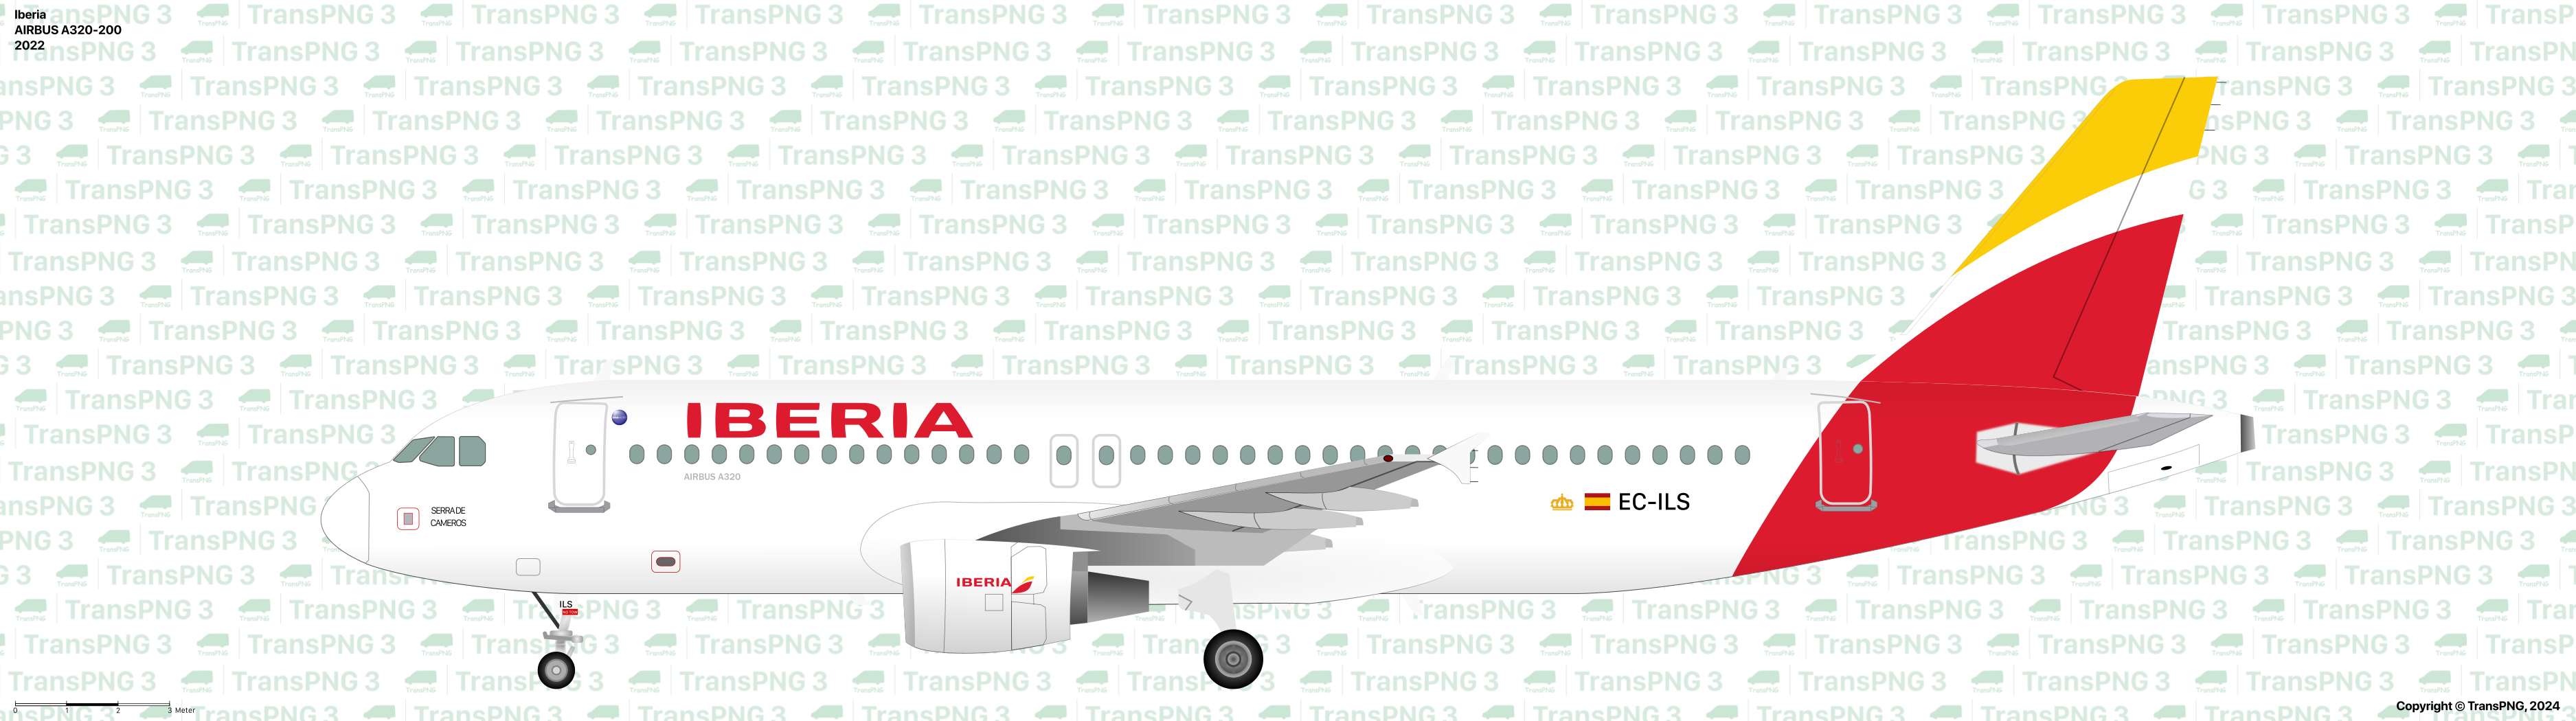 TransPNG.net | 分享世界各地多種交通工具的優秀繪圖 - 客機 53506105431_dae57e7ac3_o